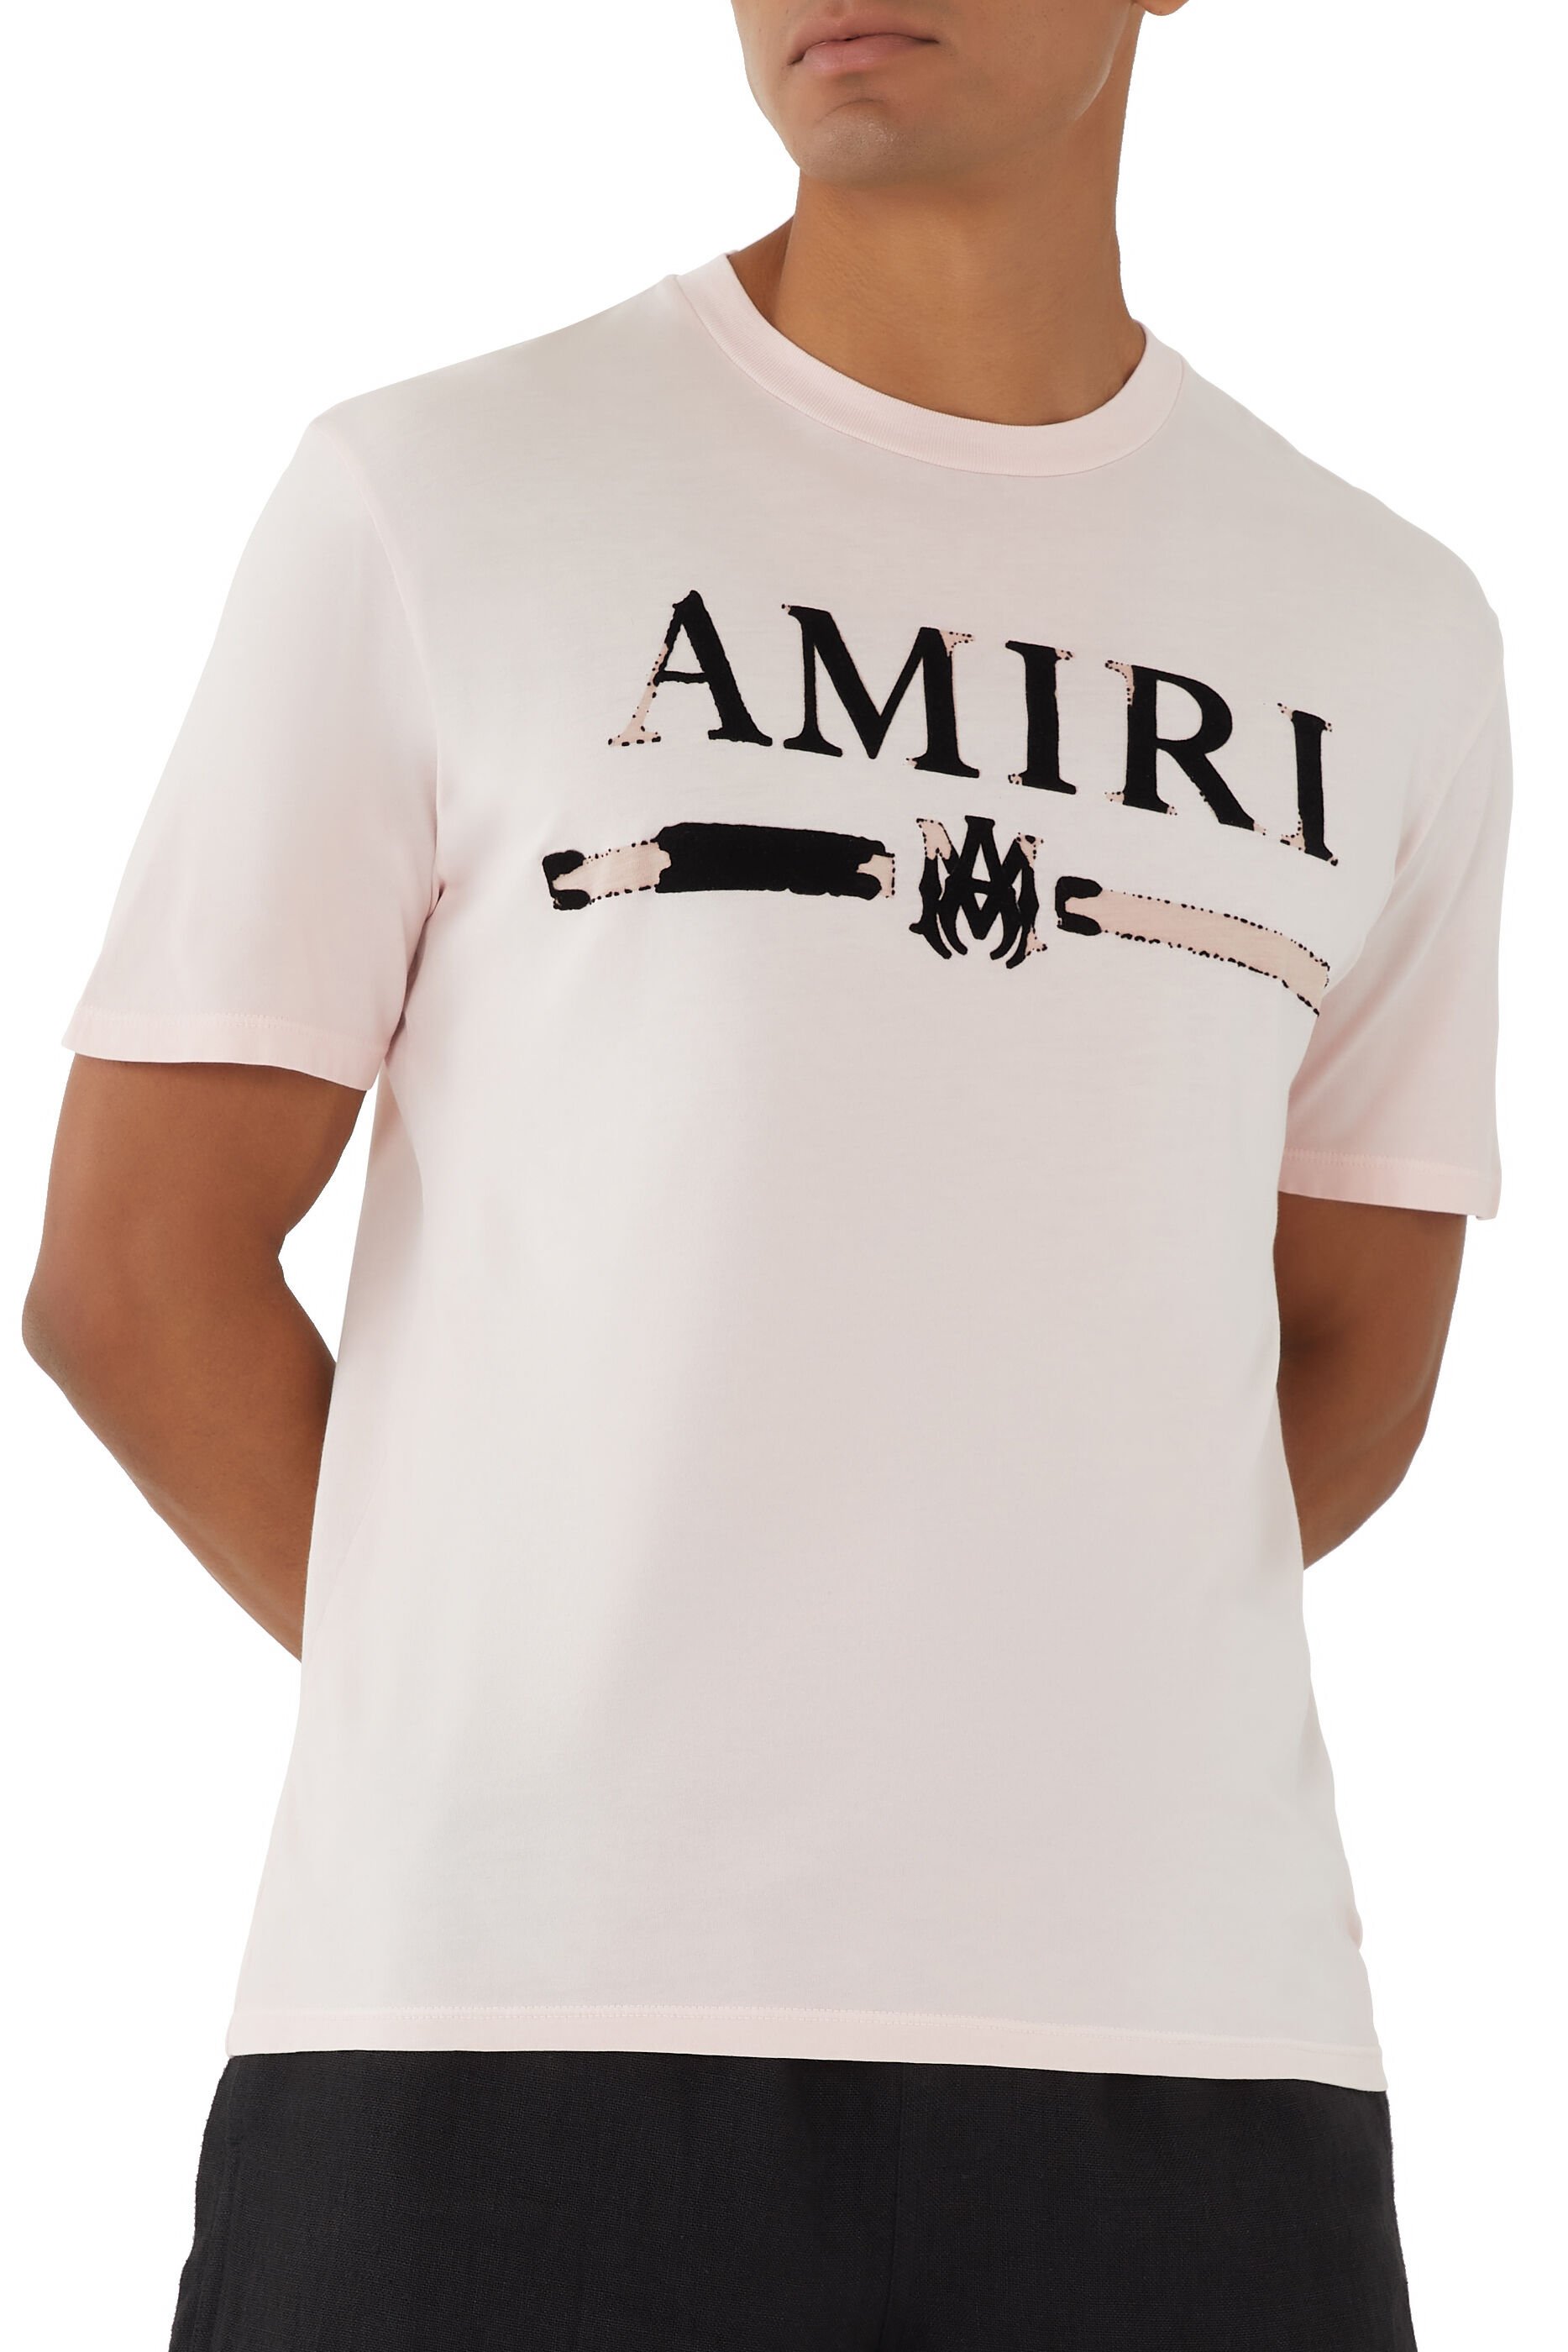 AMIRI アミリ M.A. Bar MAバー 半袖 Tシャツ ブラウン L-